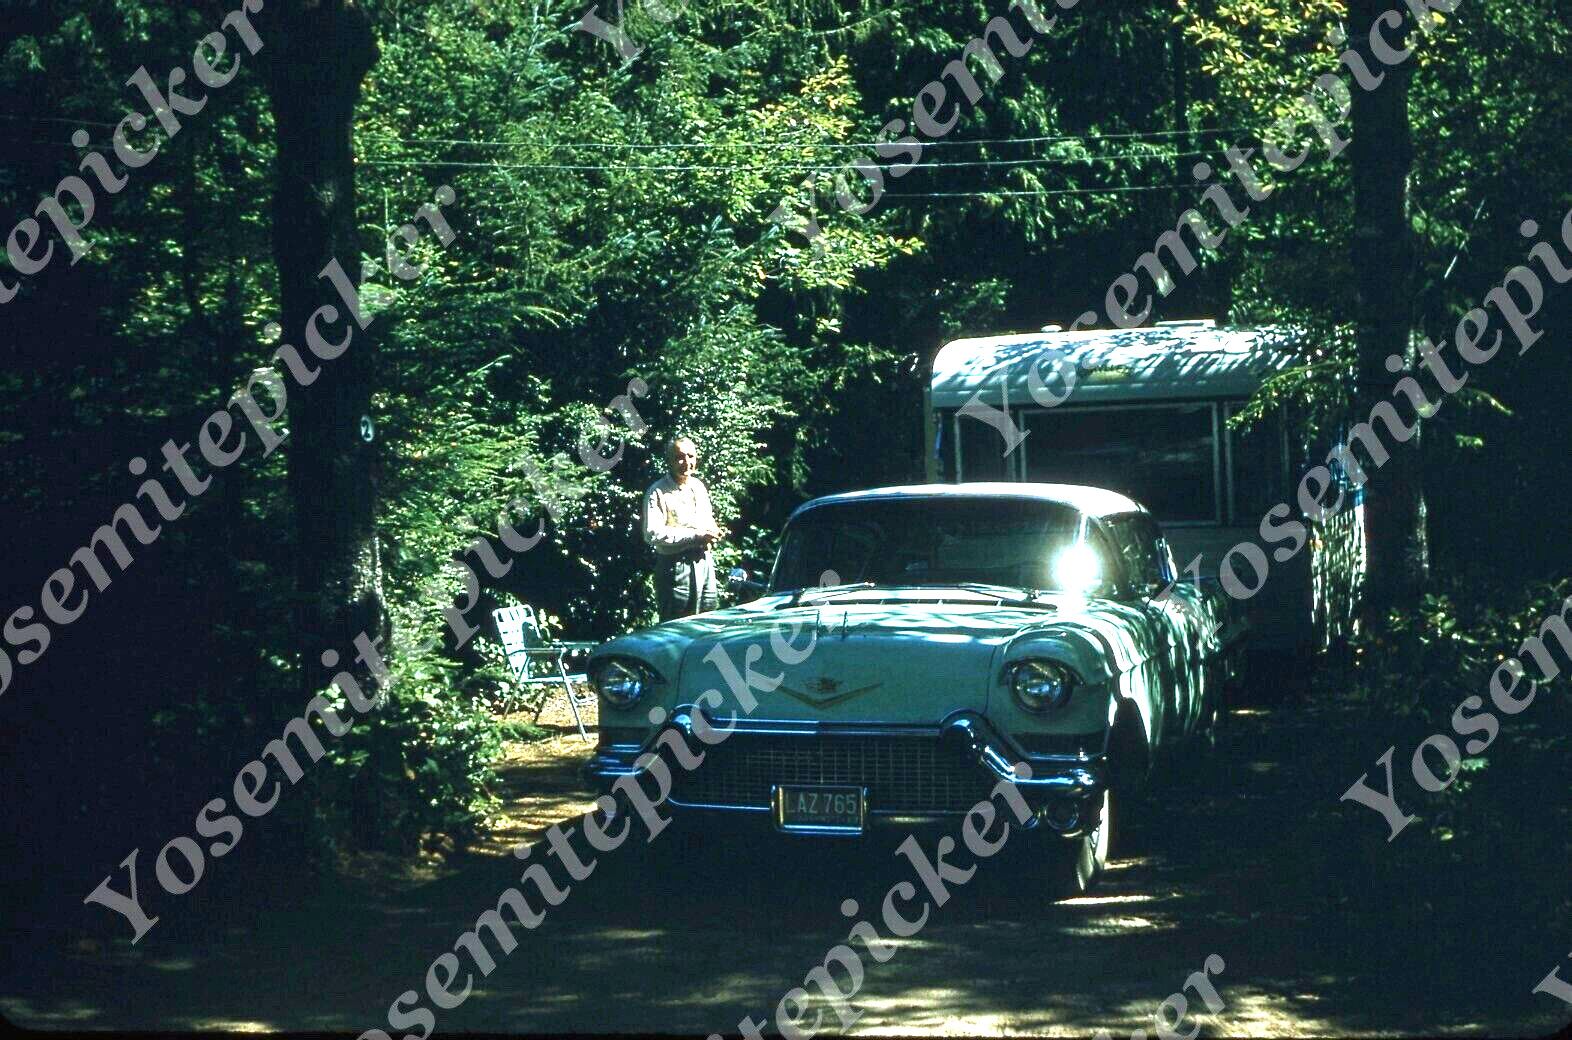 sl58 Original Slide 1959 man campground car trailer 539a